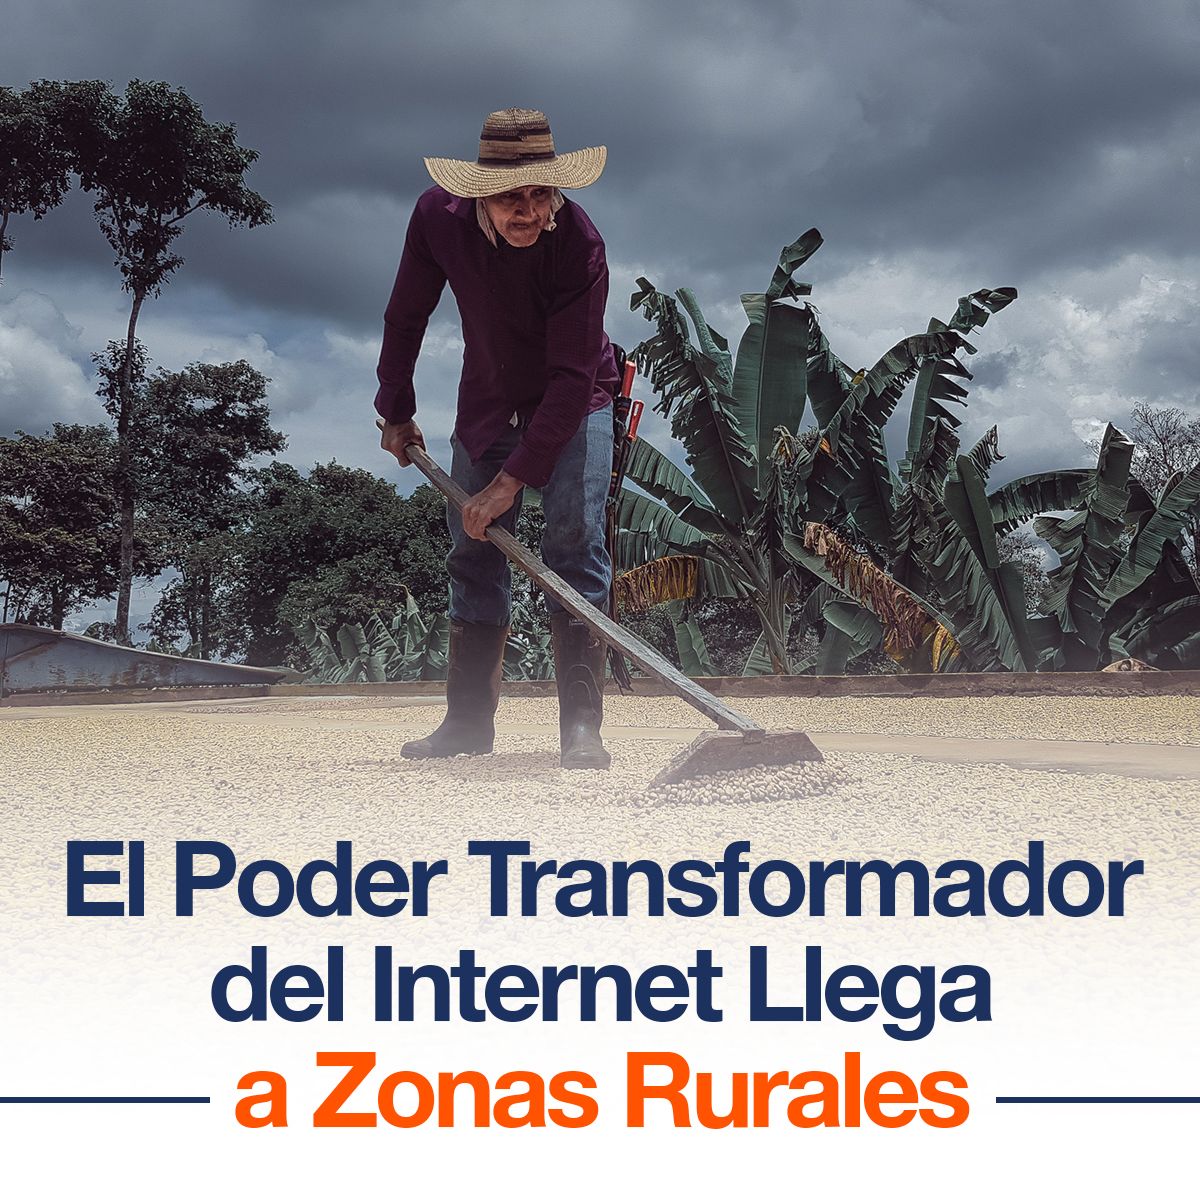 El Poder Transformador del Internet Llega a Zonas Rurales